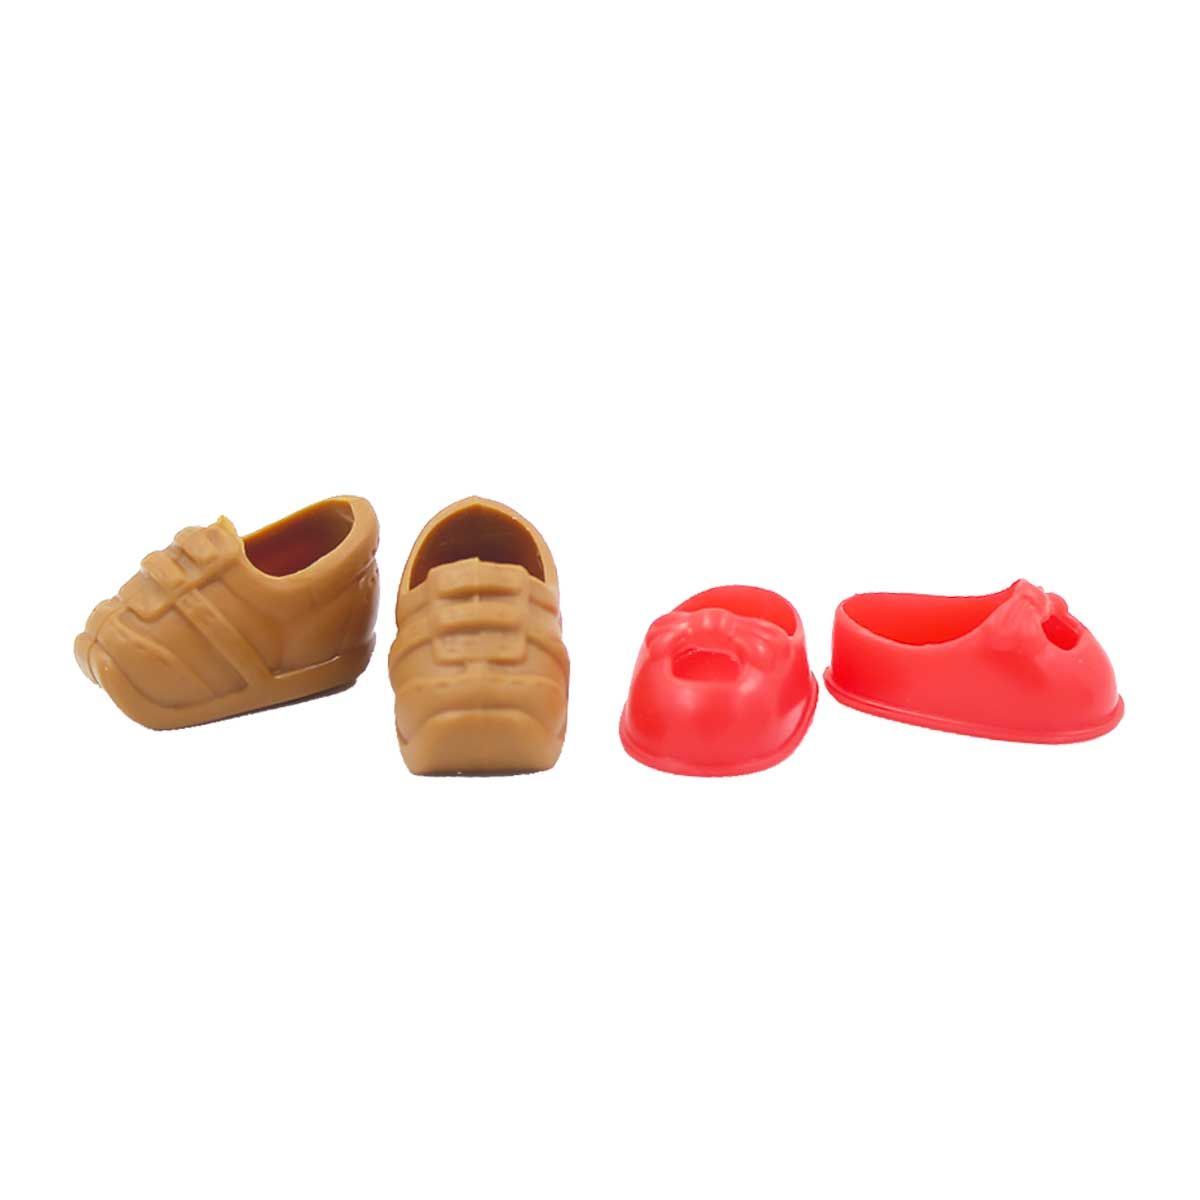 Обувь Dolls Accessories для кукол Еви на широкую стопу 1,8 см 2 пары Кроссовки